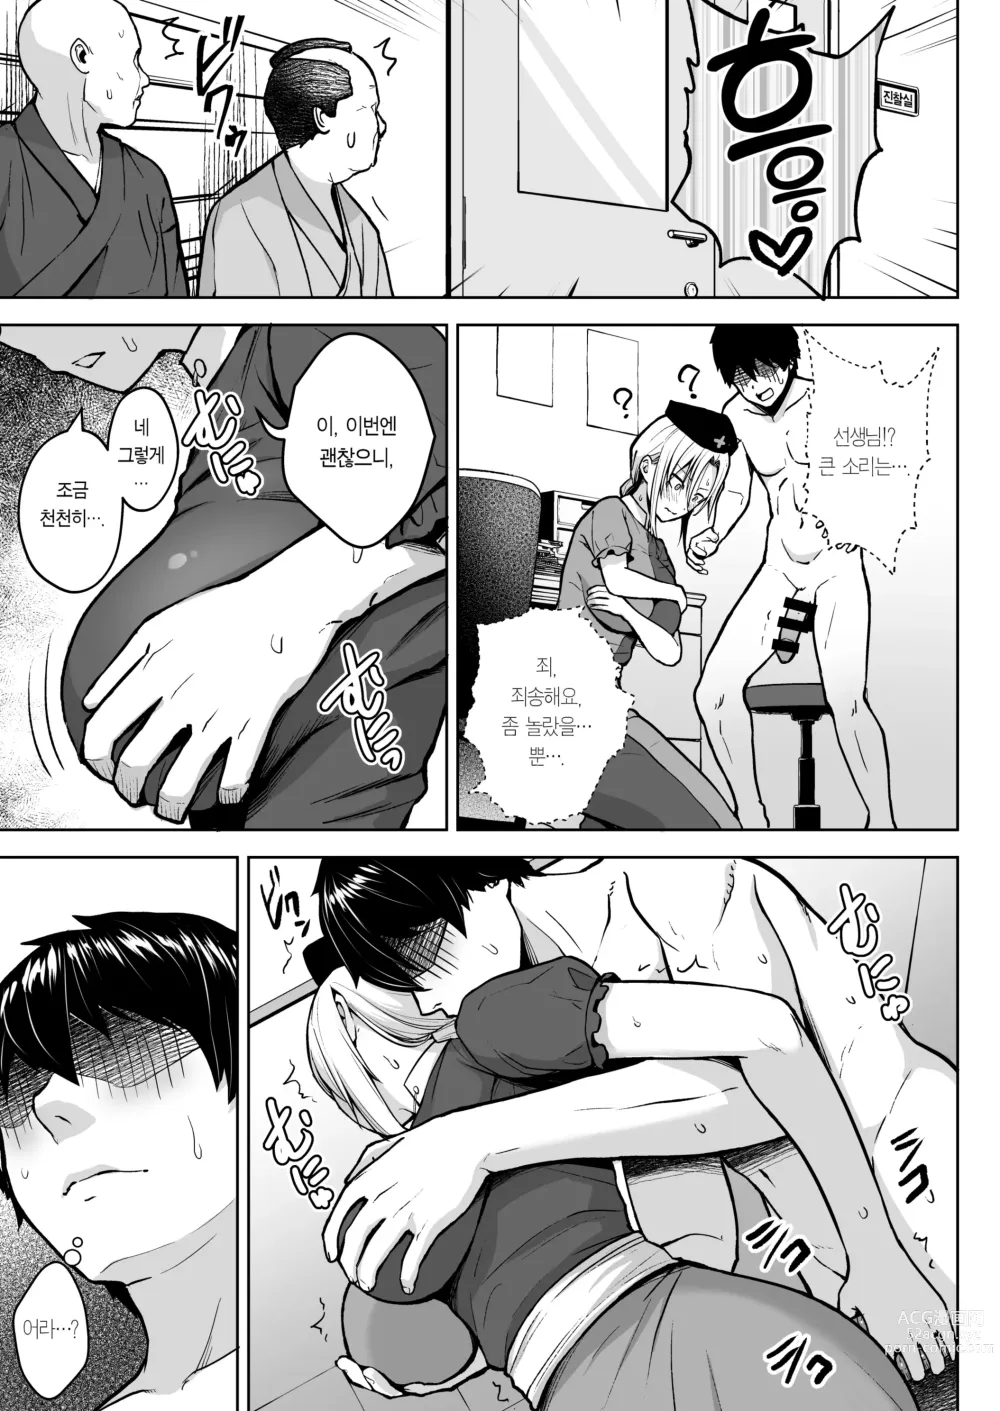 Page 11 of doujinshi 에이린이 가슴을 존나 괴롭혀져서 P컵이 되기까지의 이야기